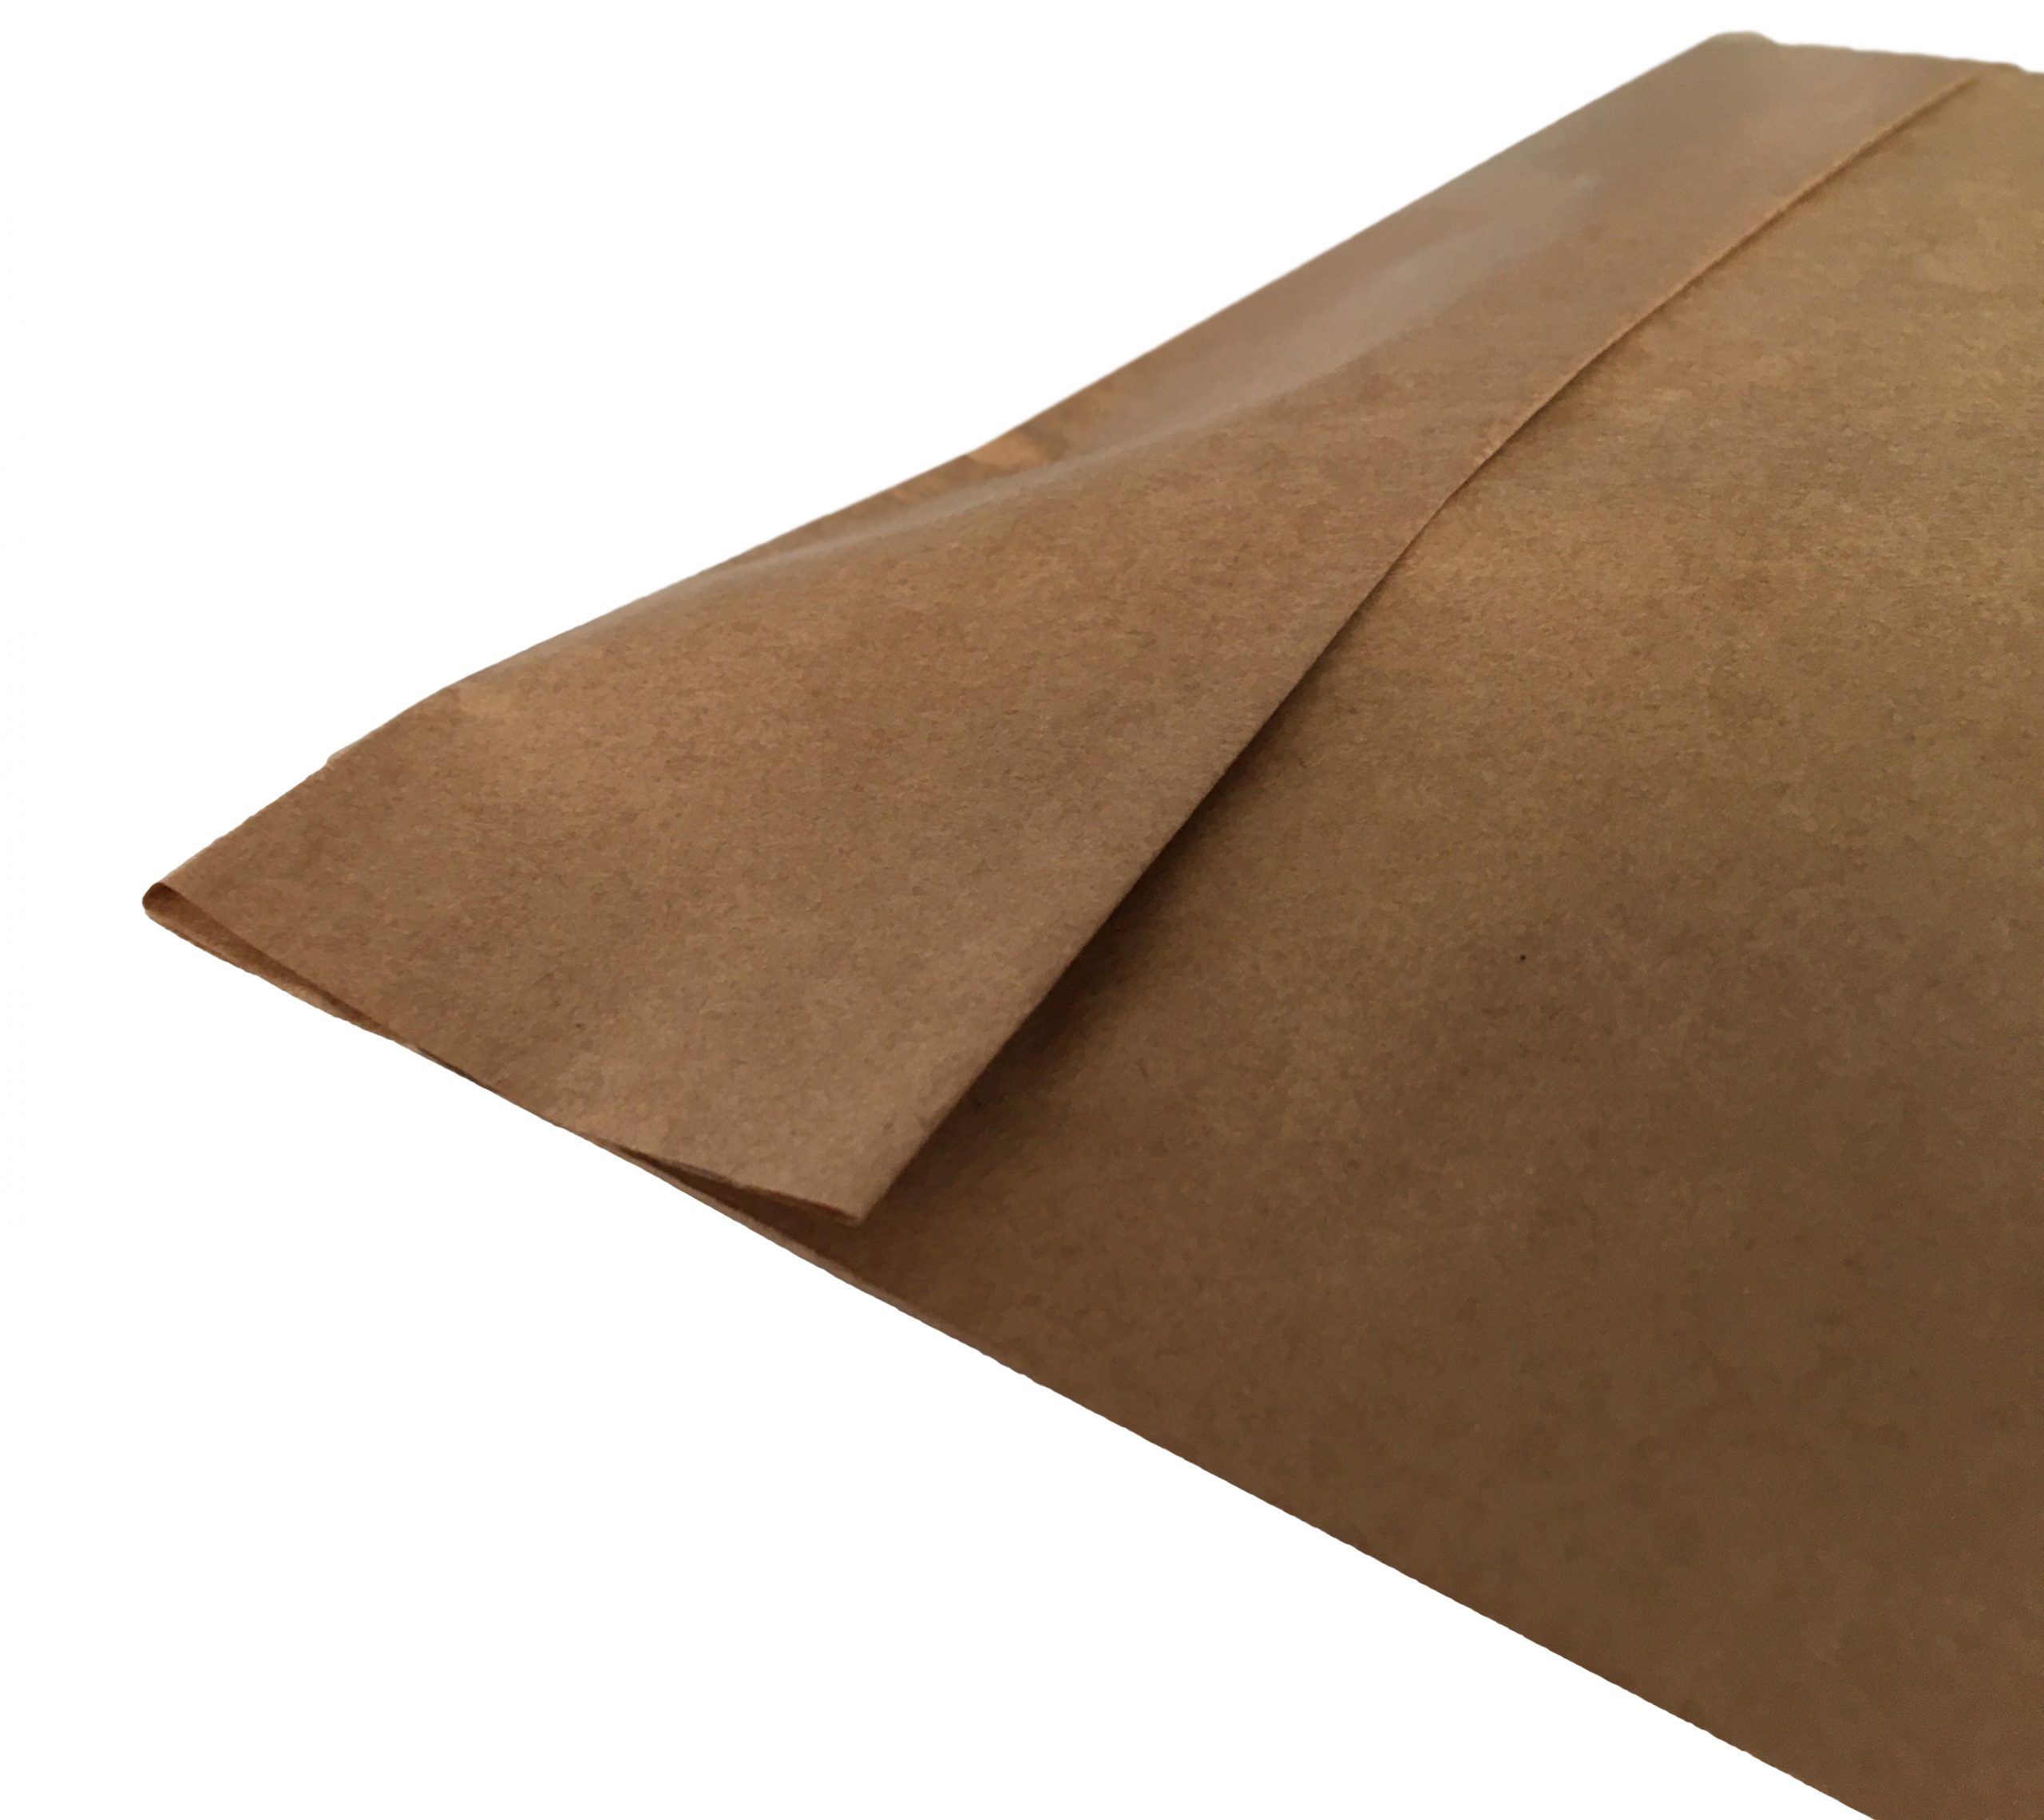 Χάρτινος σάκος αποστολών courier (με κάτω πιέτα) 35+10/40 εκ. (κιβώτιο 500 τμχ)